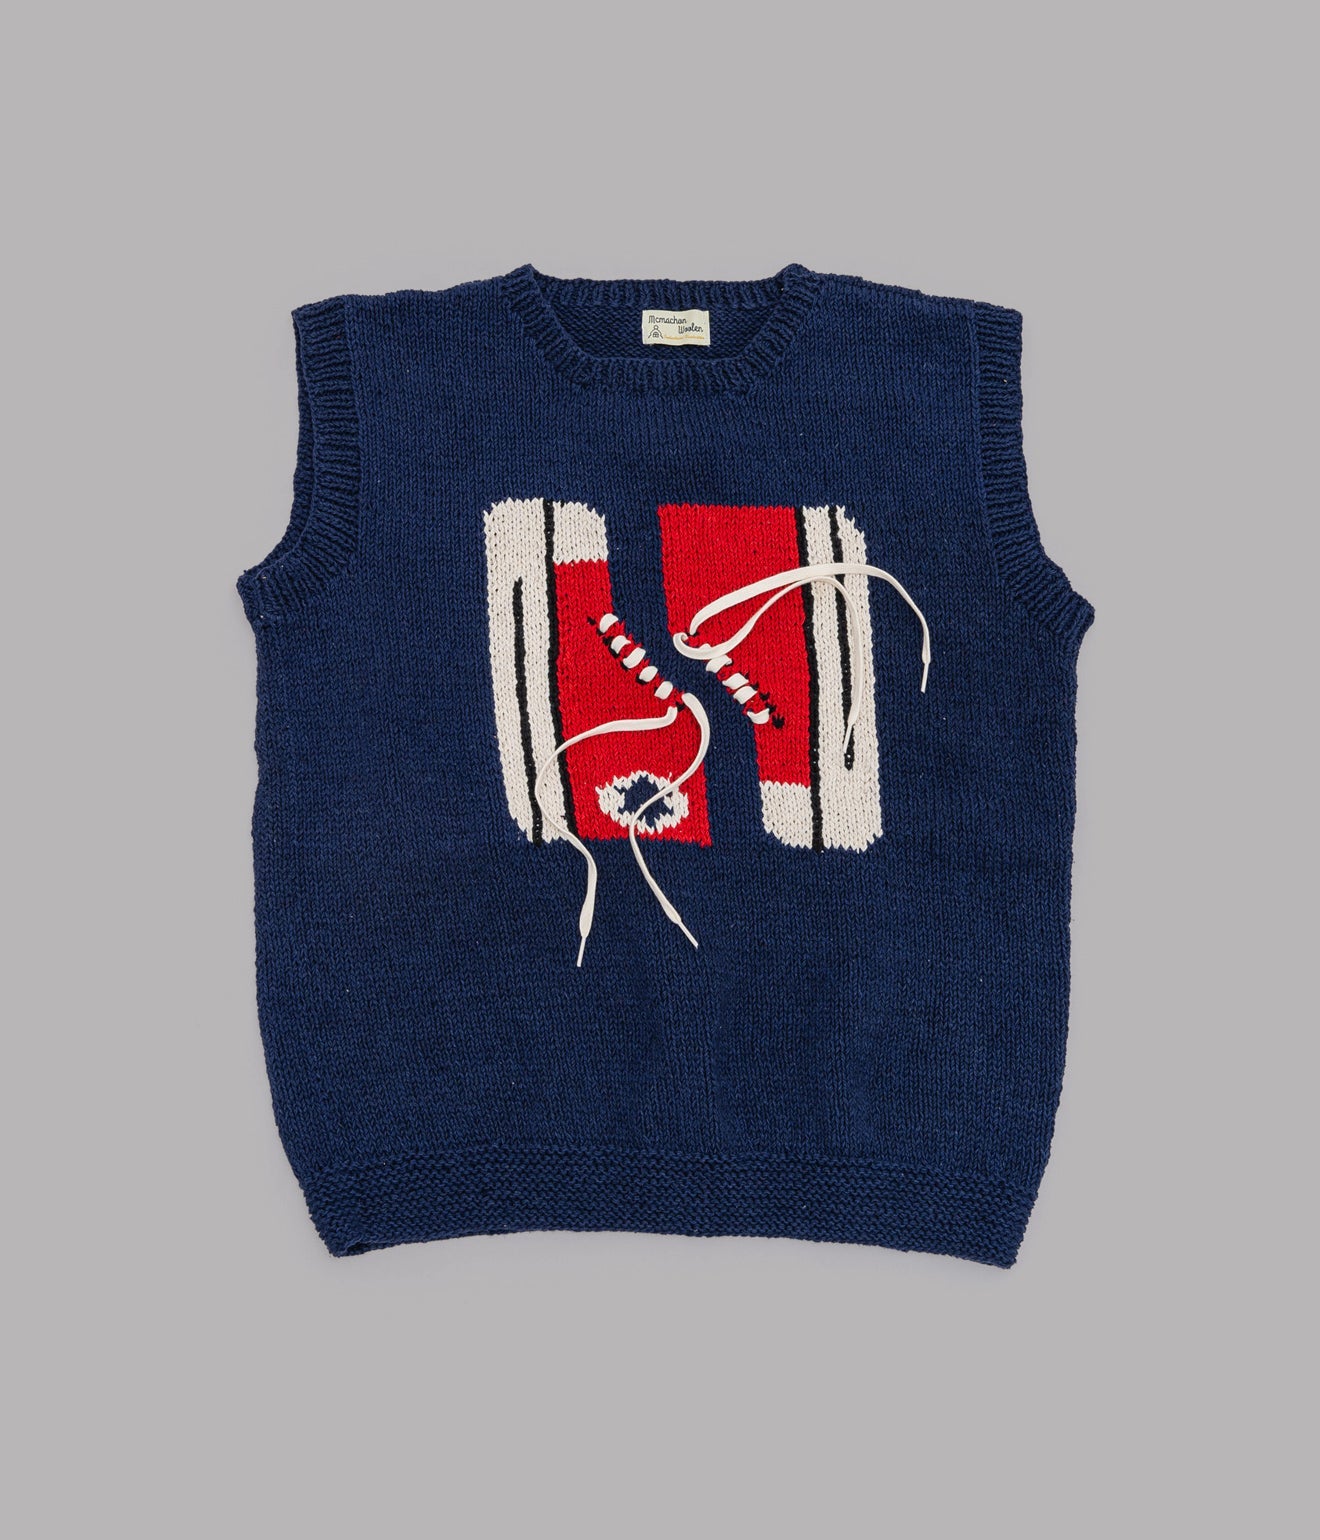 MacMahon Knitting Mills+niche. "Crew Neck Vest - Sneaker" Navy / Red - WEAREALLANIMALS